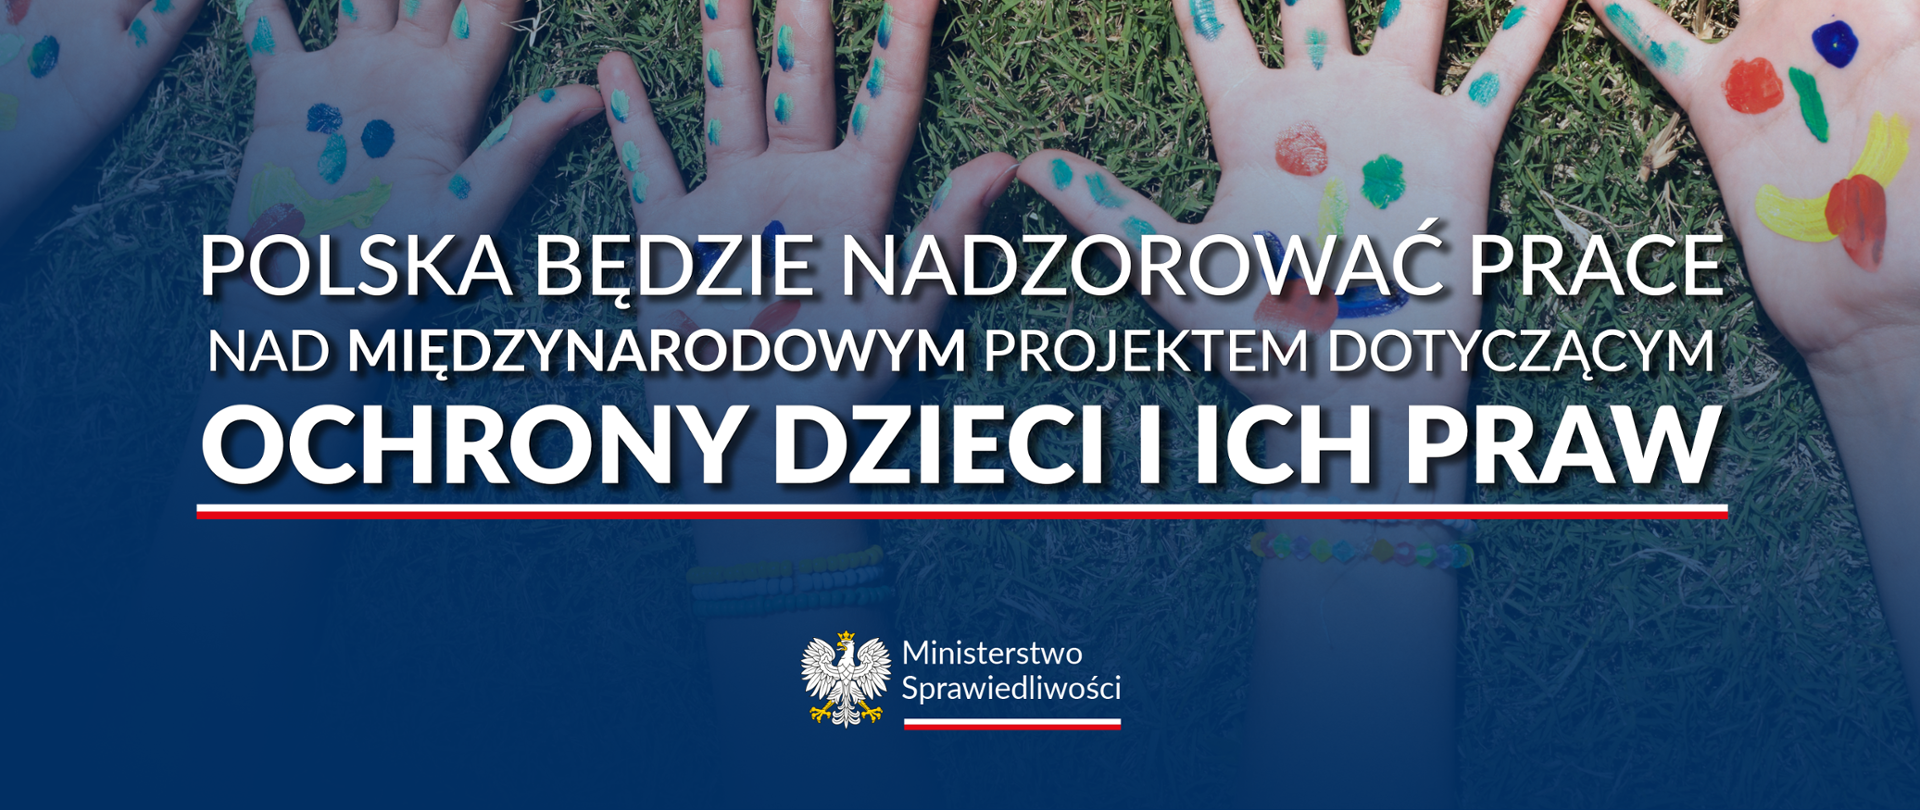 Polska będzie nadzorować prace nad międzynarodowym projektem dotyczącym ochrony dzieci i ich praw